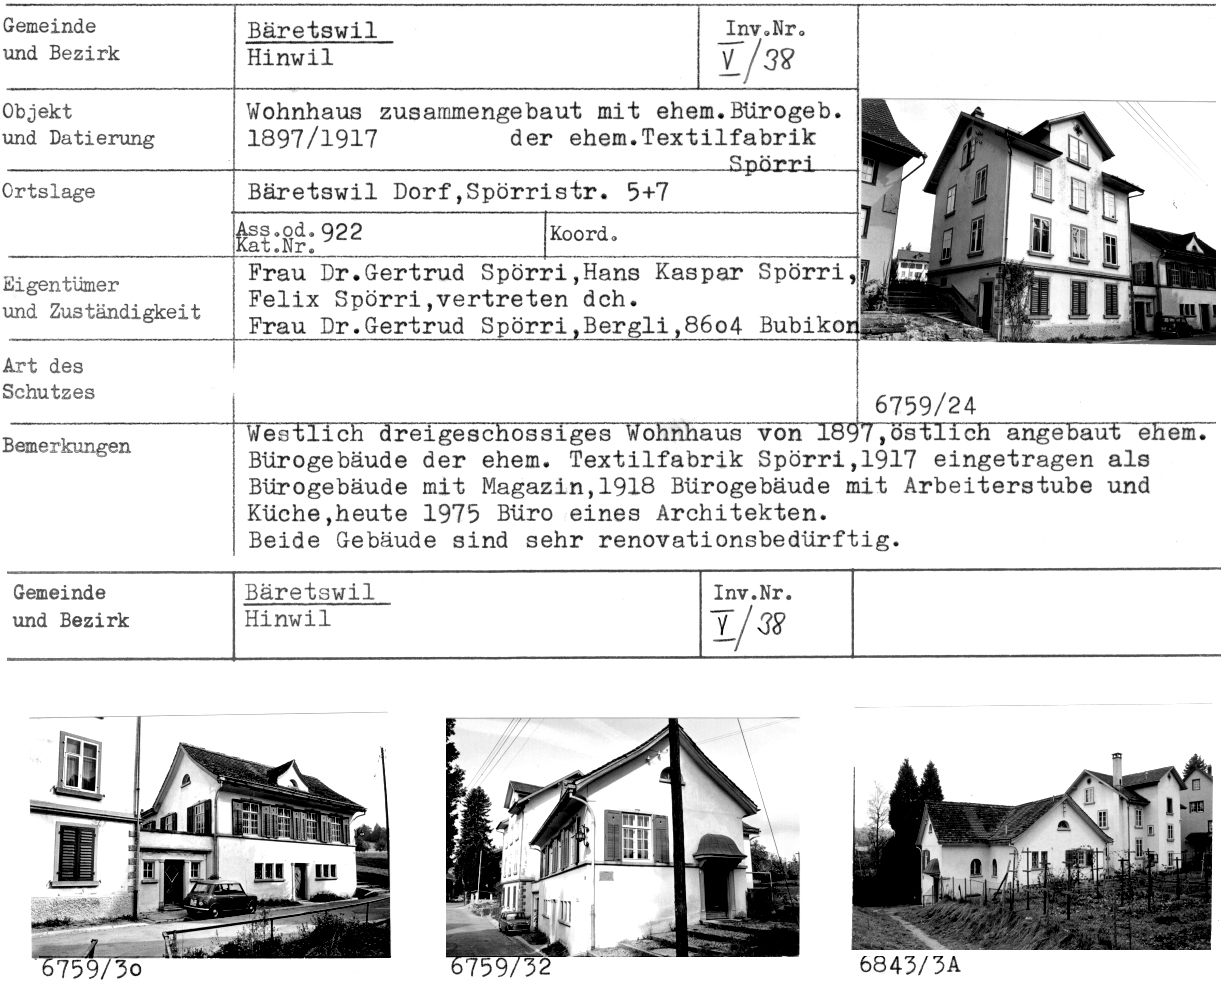 Wohnhaus zusammengebaut mit ehem. Bürogeb., 1897/1917, Dorf, Spörristr.5+7